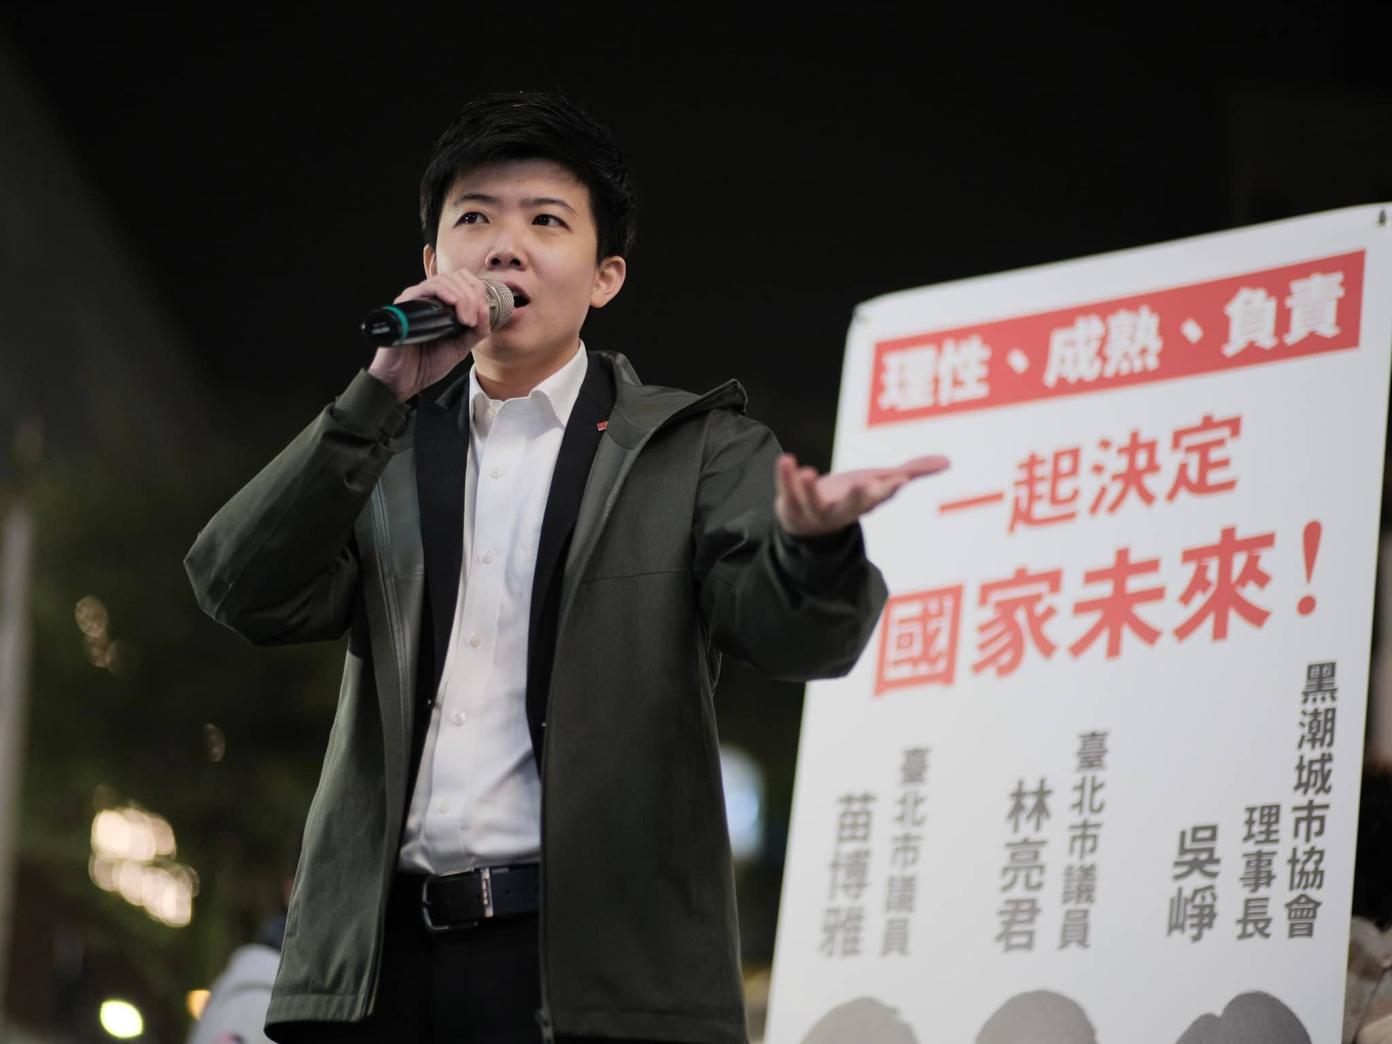 台北市議員苗博雅說要組大安立委輪替大聯盟酸對手羅智強。翻攝苗博雅臉書